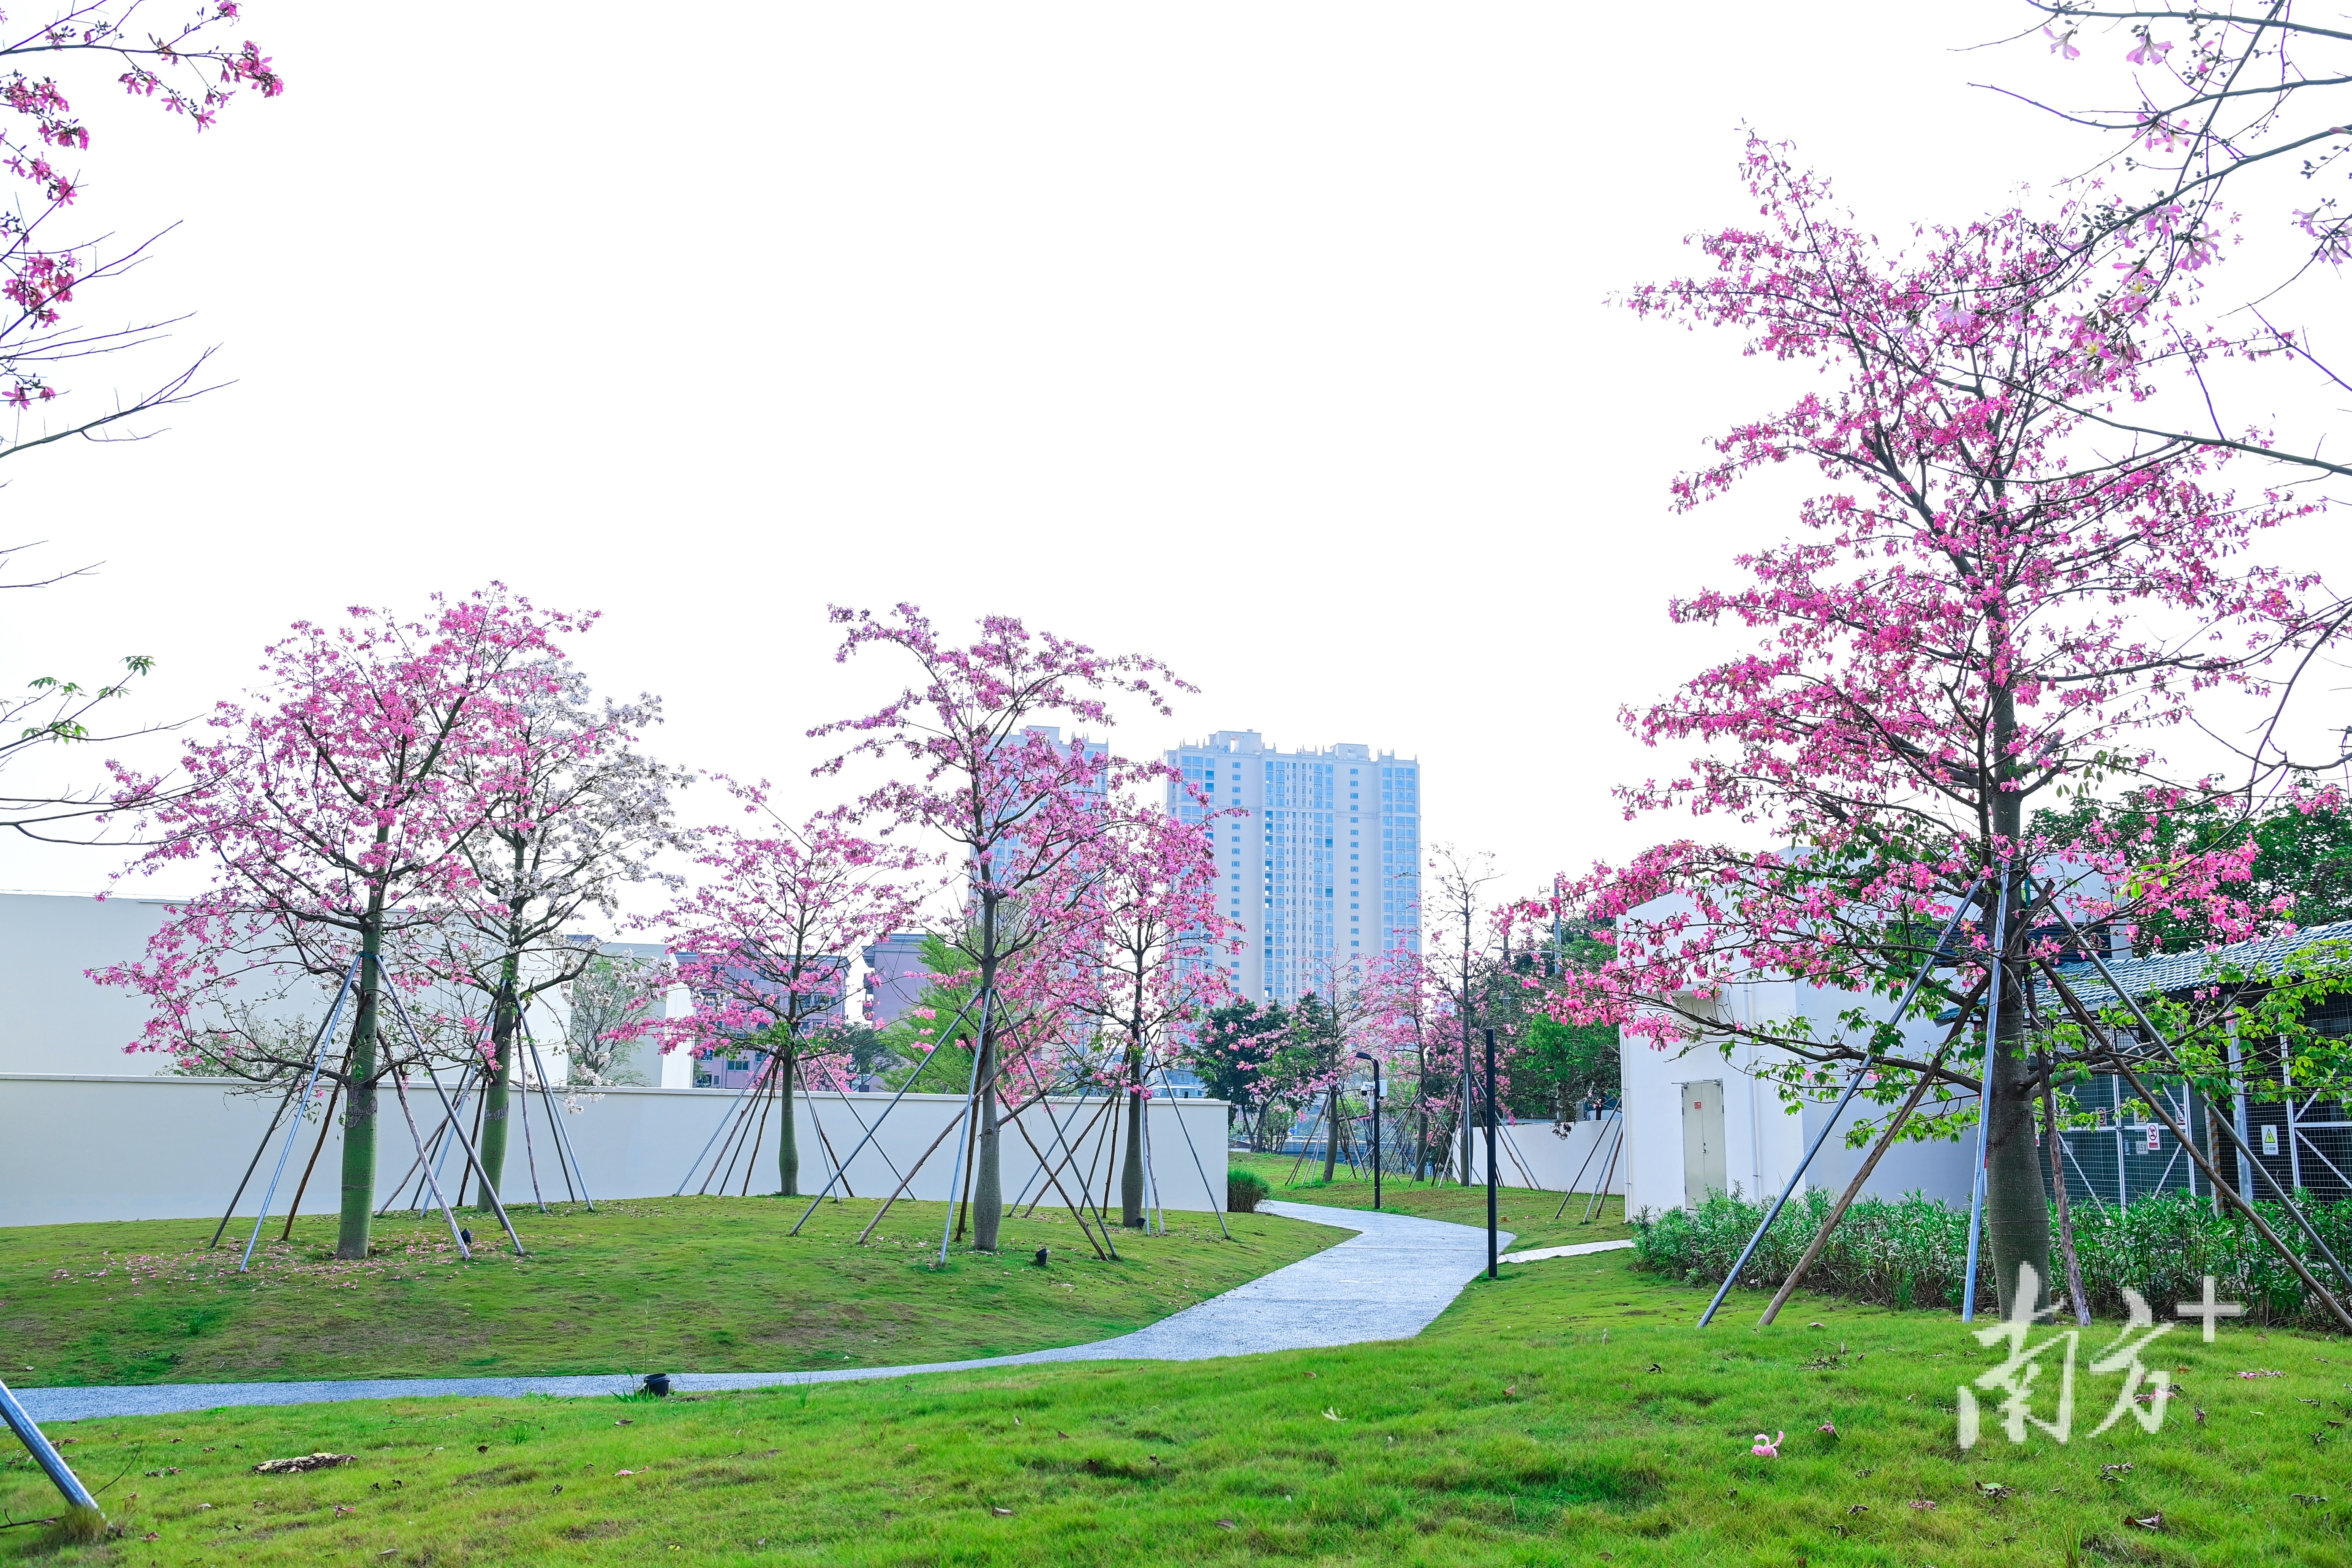 黄江镇科技公园，粉红色的异木棉花悄悄爬上枝头。李鄂 摄